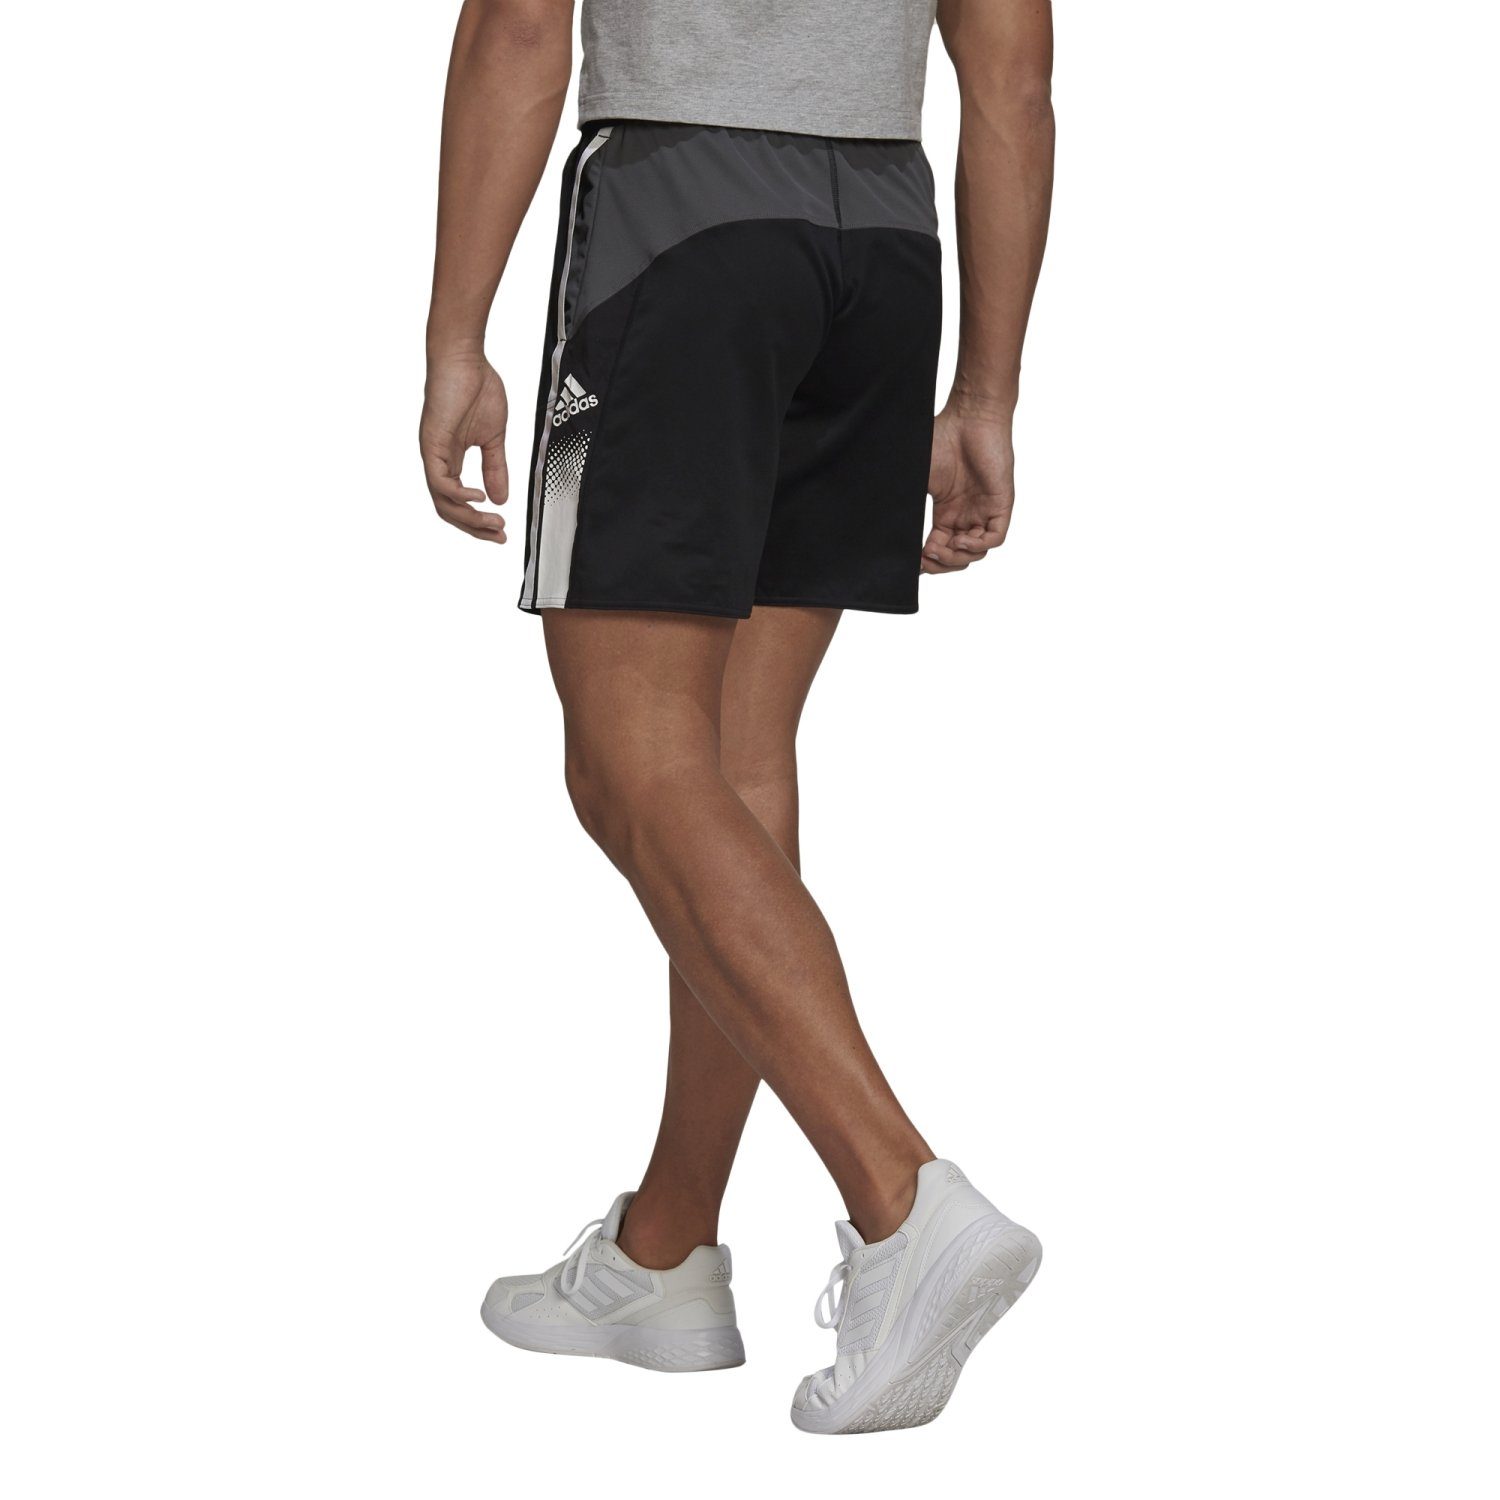 SHO Shorts adidas Performance BLACK/WHITE Seaso M